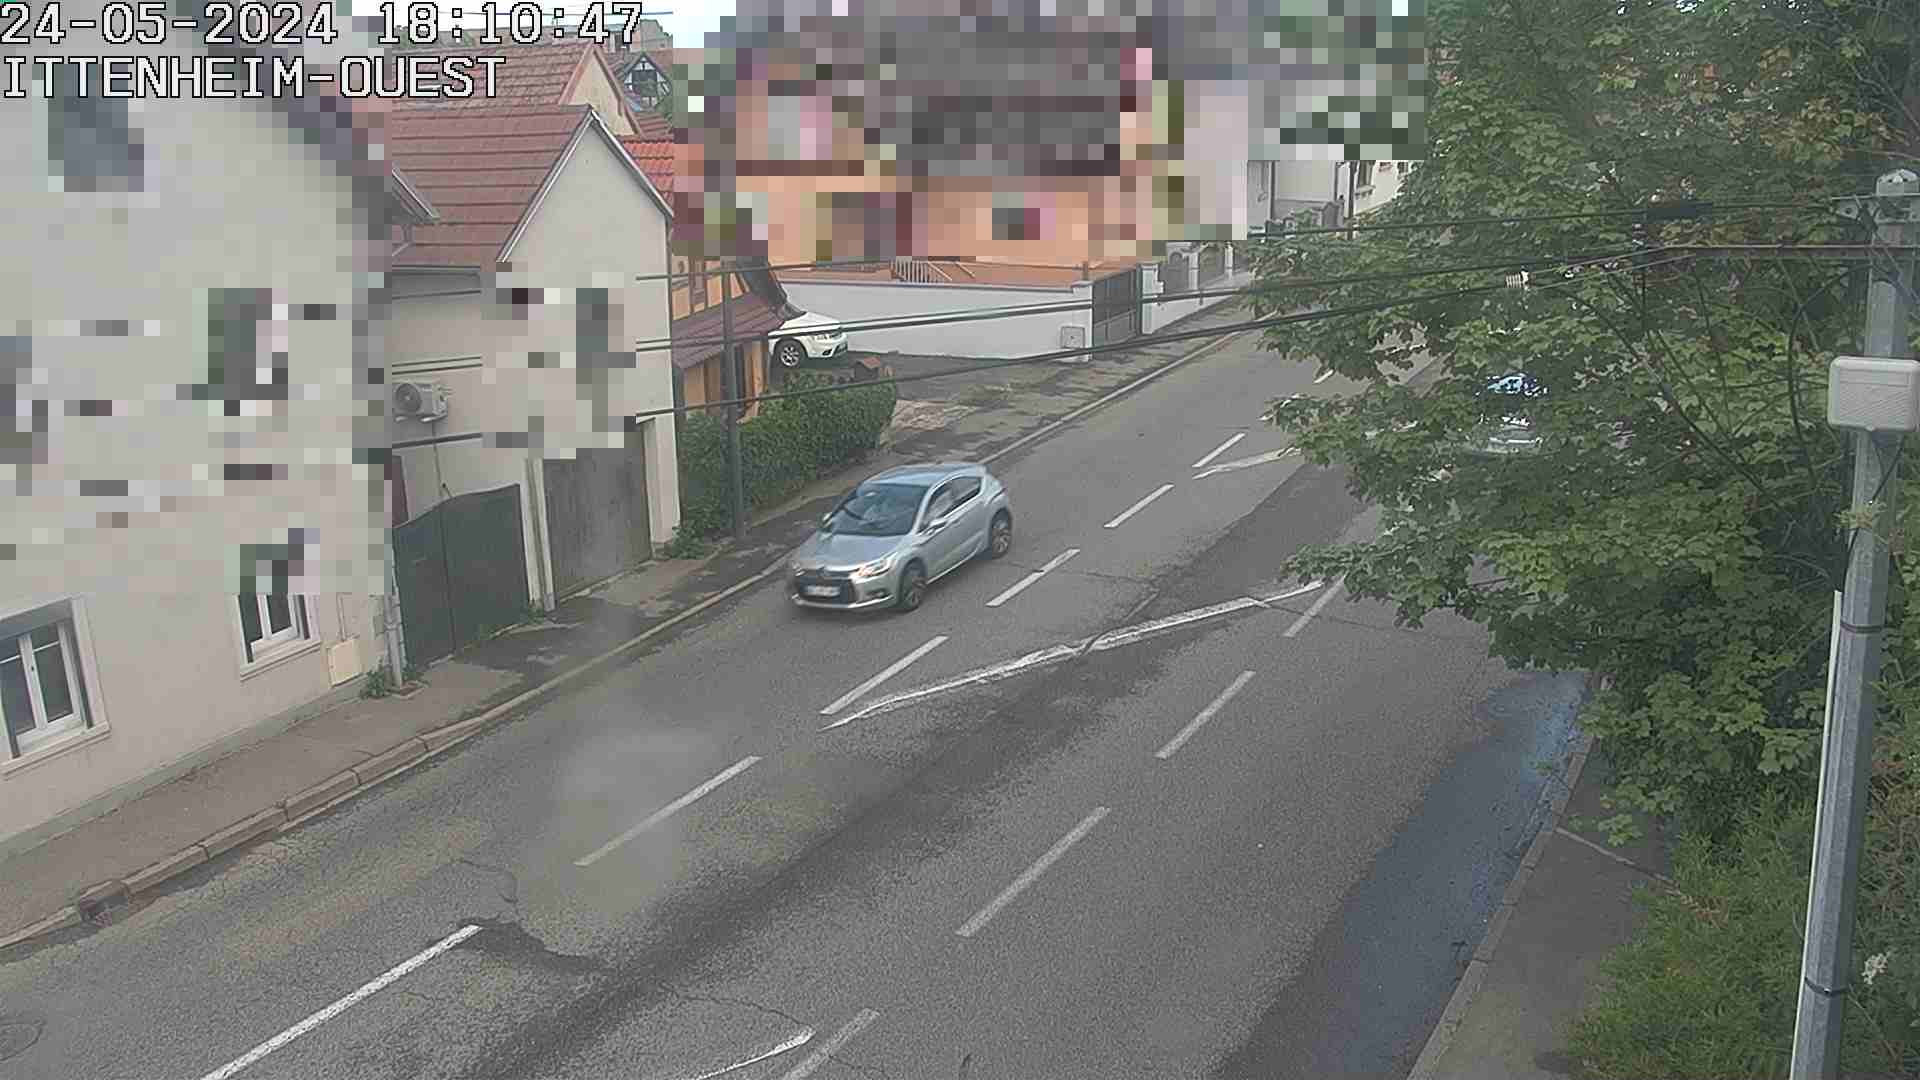 Webcam routière à la fin de la D1004 à la sortie d'Ittenheim en venant de Strasbourg, en provenance du Contournement Ouest de Strasbourg (A355) et de la Nationale 4